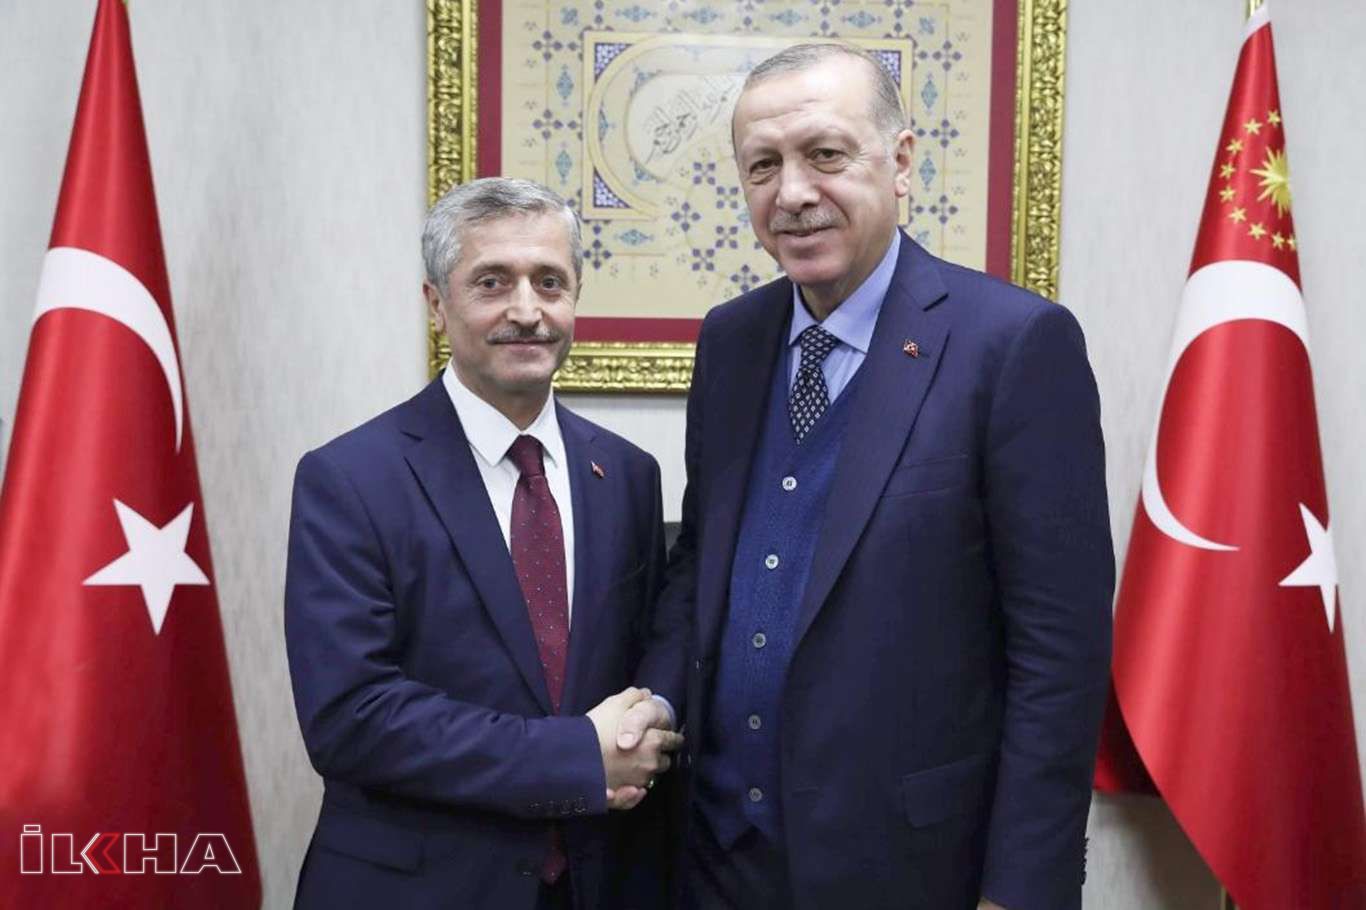 Cumhurbaşkanı Erdoğan, öğrencilere destek veren Şahinbey Belediyesini örnek gösterdi